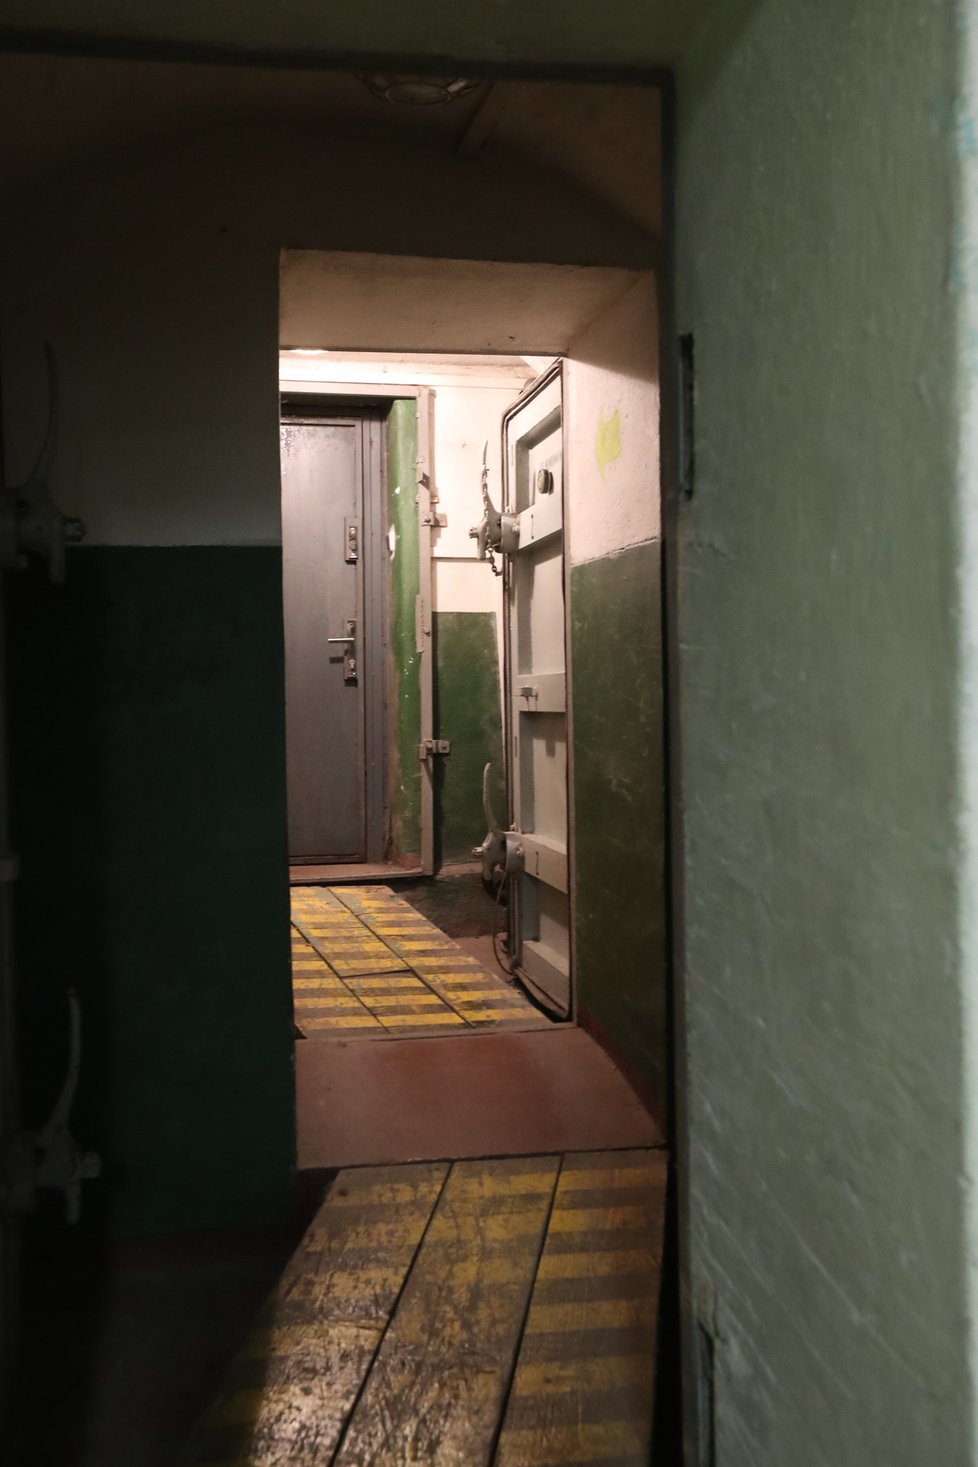 Vchod do krytu střeží hned několik dveří. Ty měly elmiminovat případné následky radioaktivního záření nebo tlakovou vlnu.